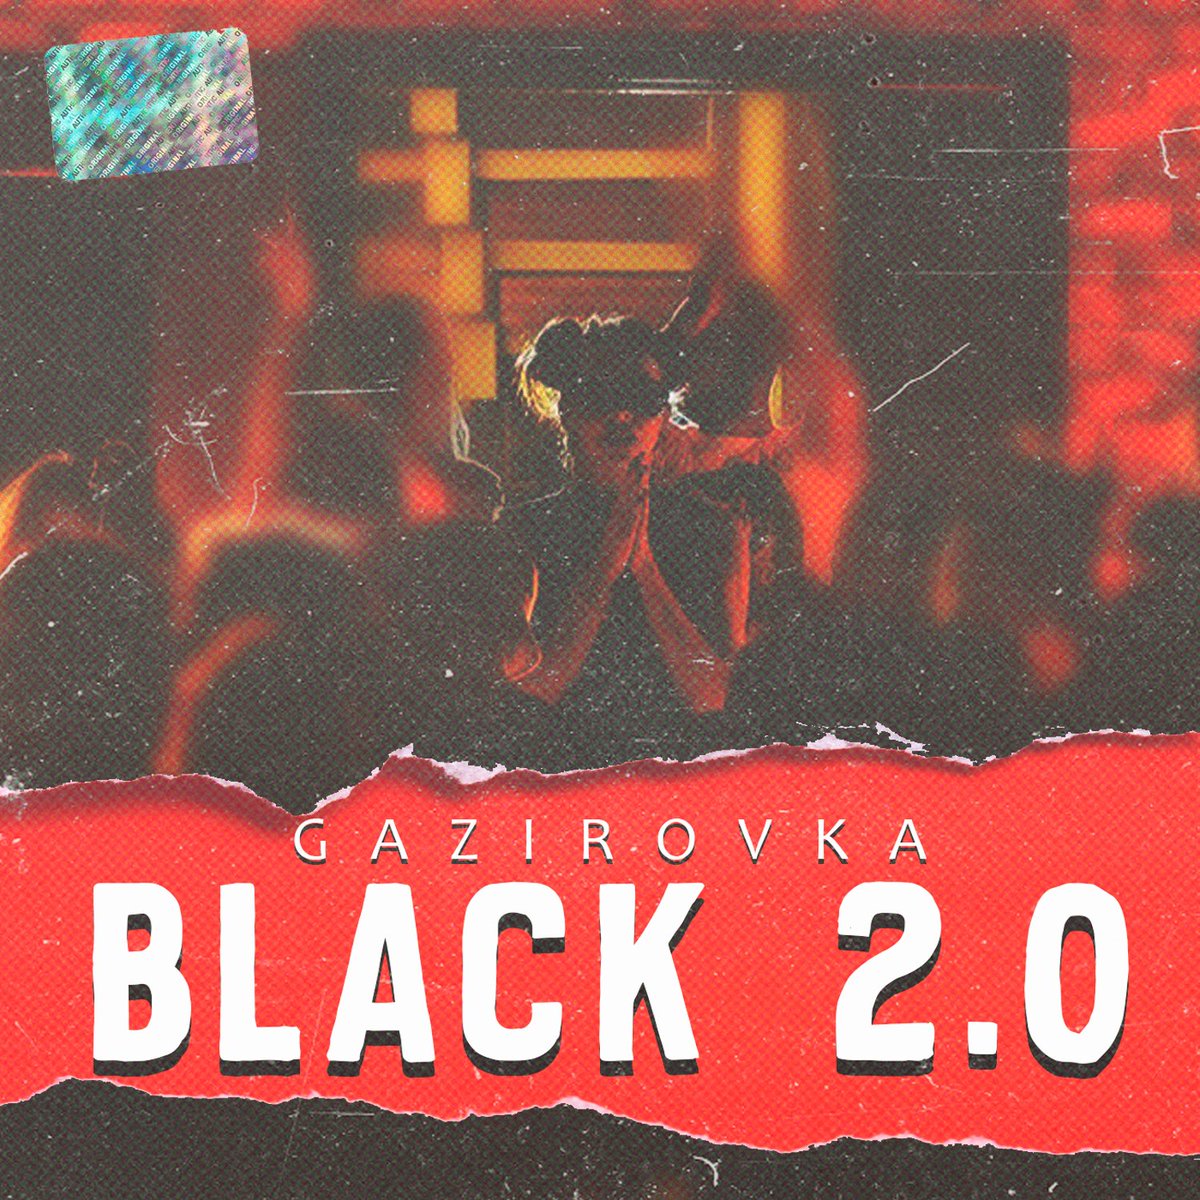 Gazirovka Black 2.0 cover artwork